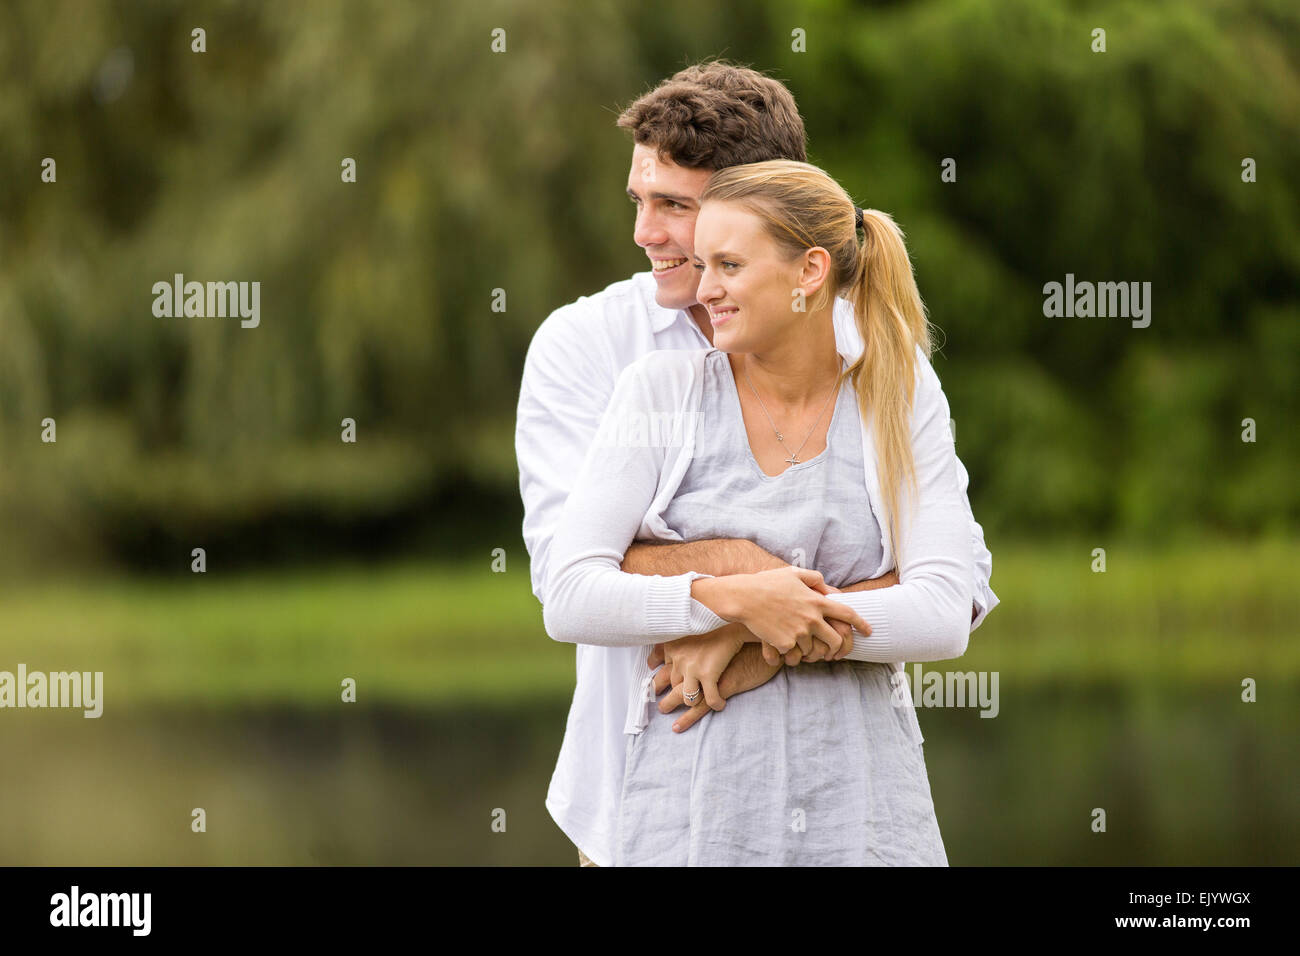 Jeune homme romantique hugging girlfriend outdoors Banque D'Images